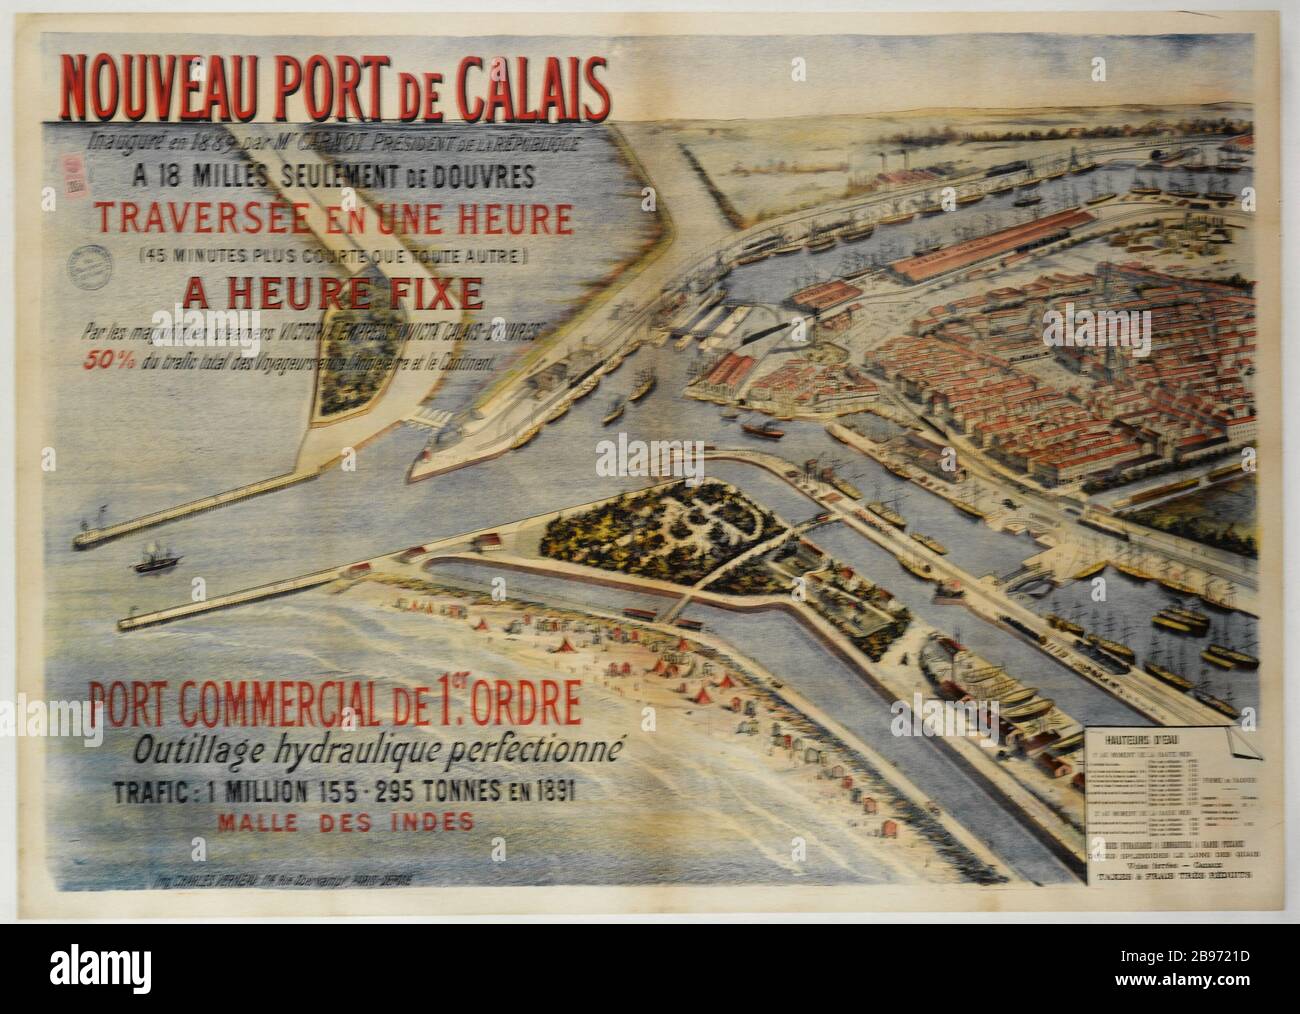 NEW PORT OF CALAIS Imprimerie Charles Verneau. 'Nouveau Port de Calais'. Affiche. Lithographie couleur. Vers 1891. Paris, musée Carnavalet. Stock Photo